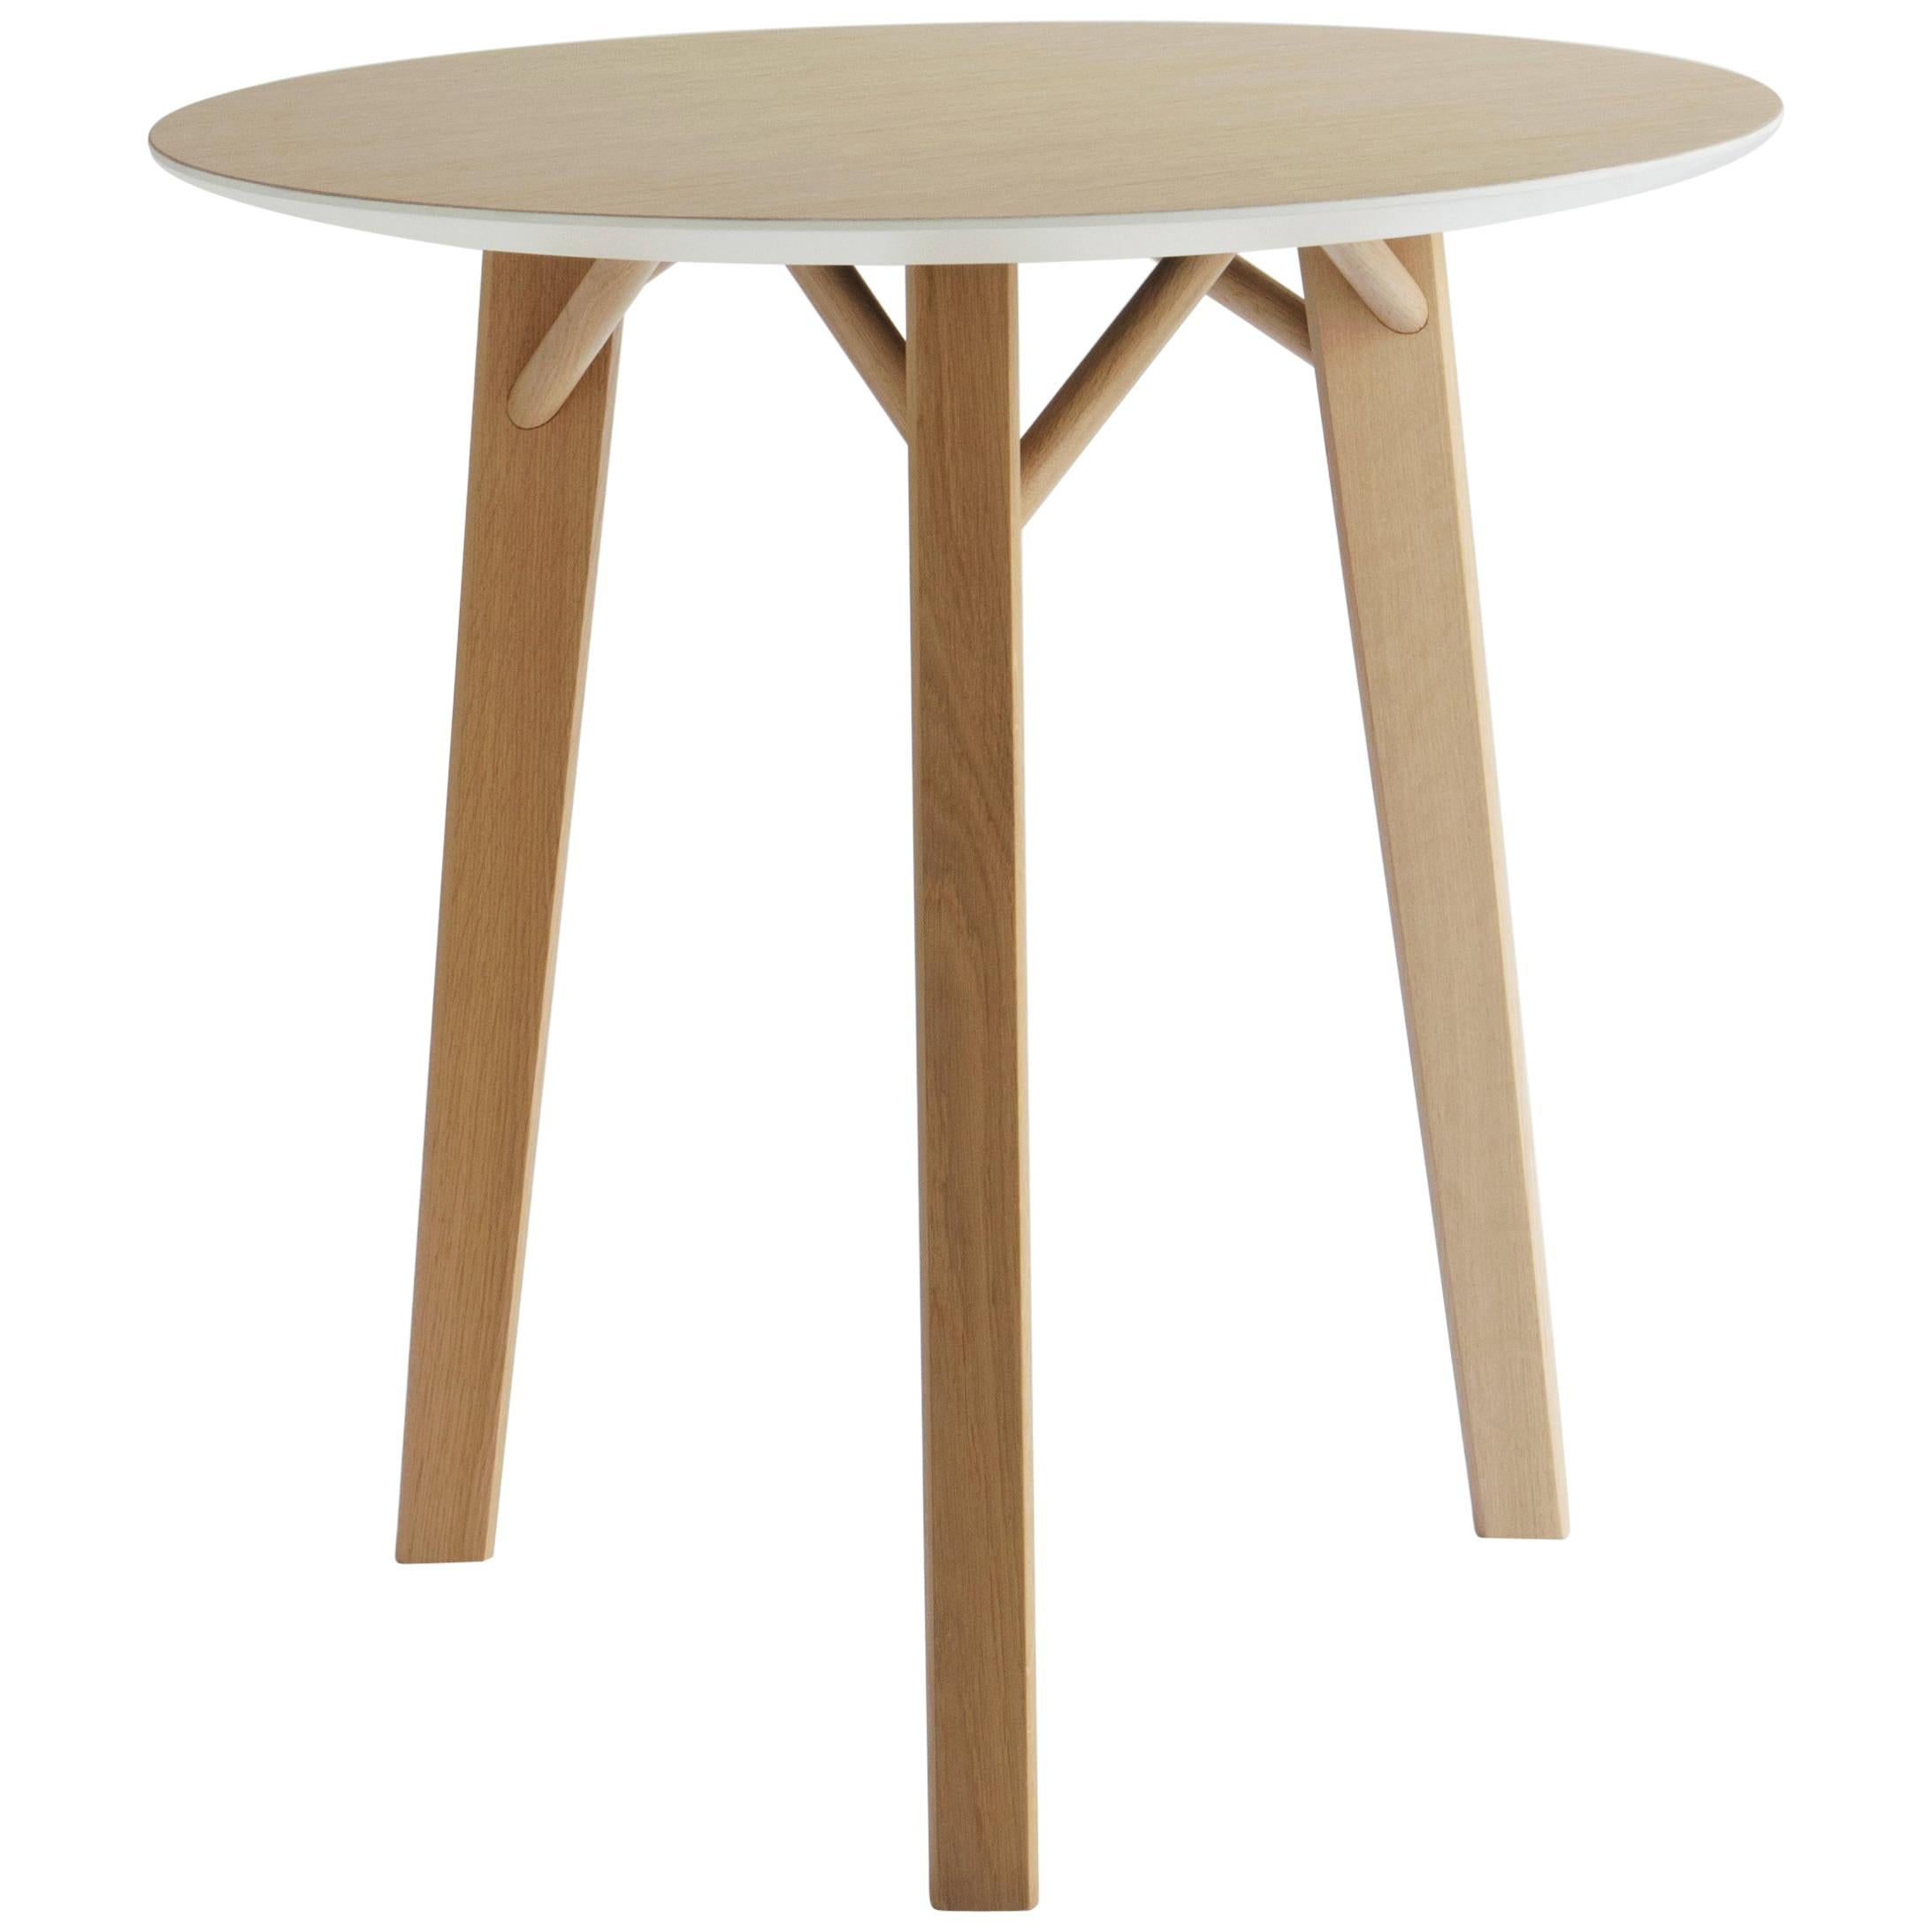 Tria Kiklos, runder Tisch von Colé, Beine aus massivem Eichenholz, ikonisches minimalistisches Design